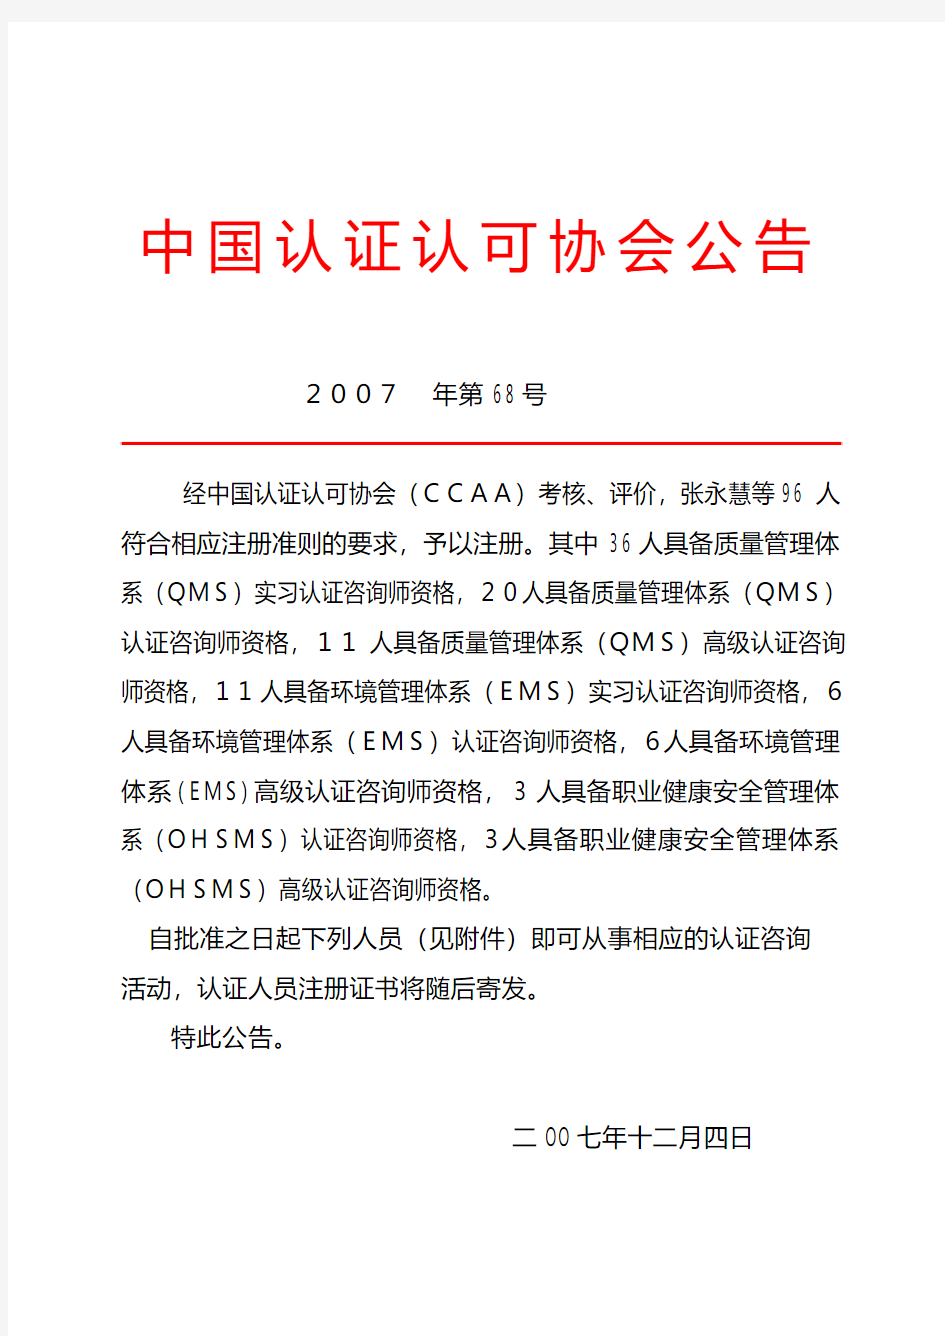 中国认证认可协会公告